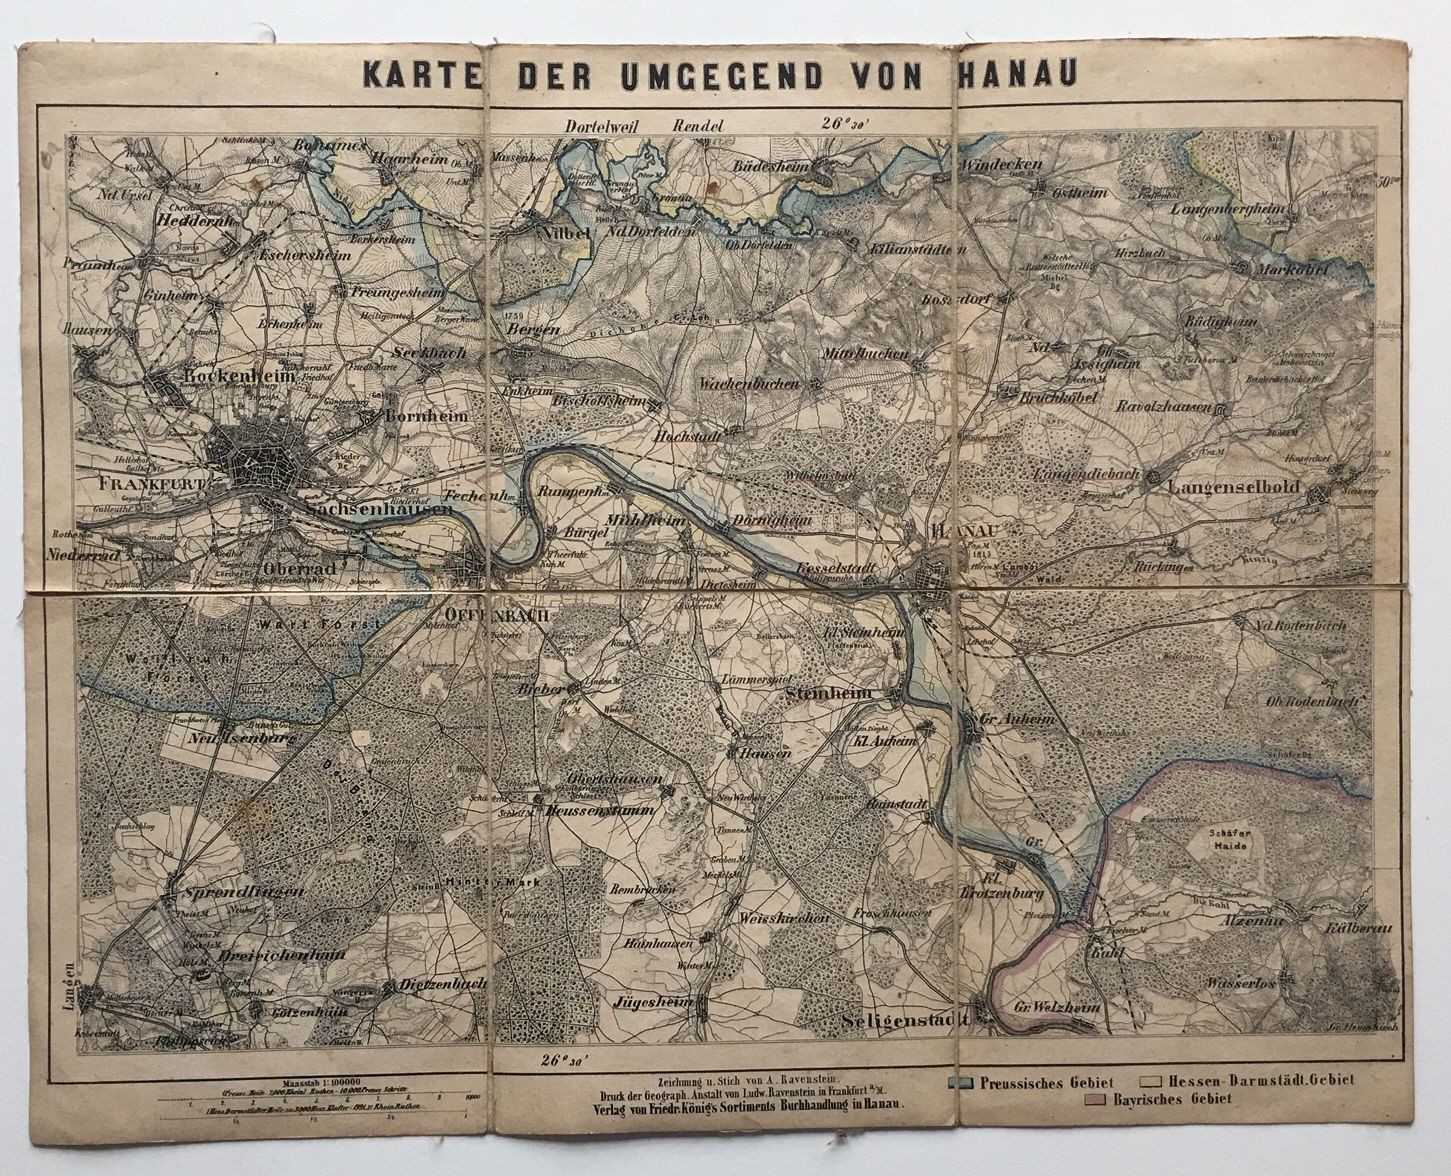 Karte der Umgebung von Hanau, ca. 1900. (Taunus-Rhein-Main - Regionalgeschichtliche Sammlung Dr. Stefan Naas CC BY-NC-SA)